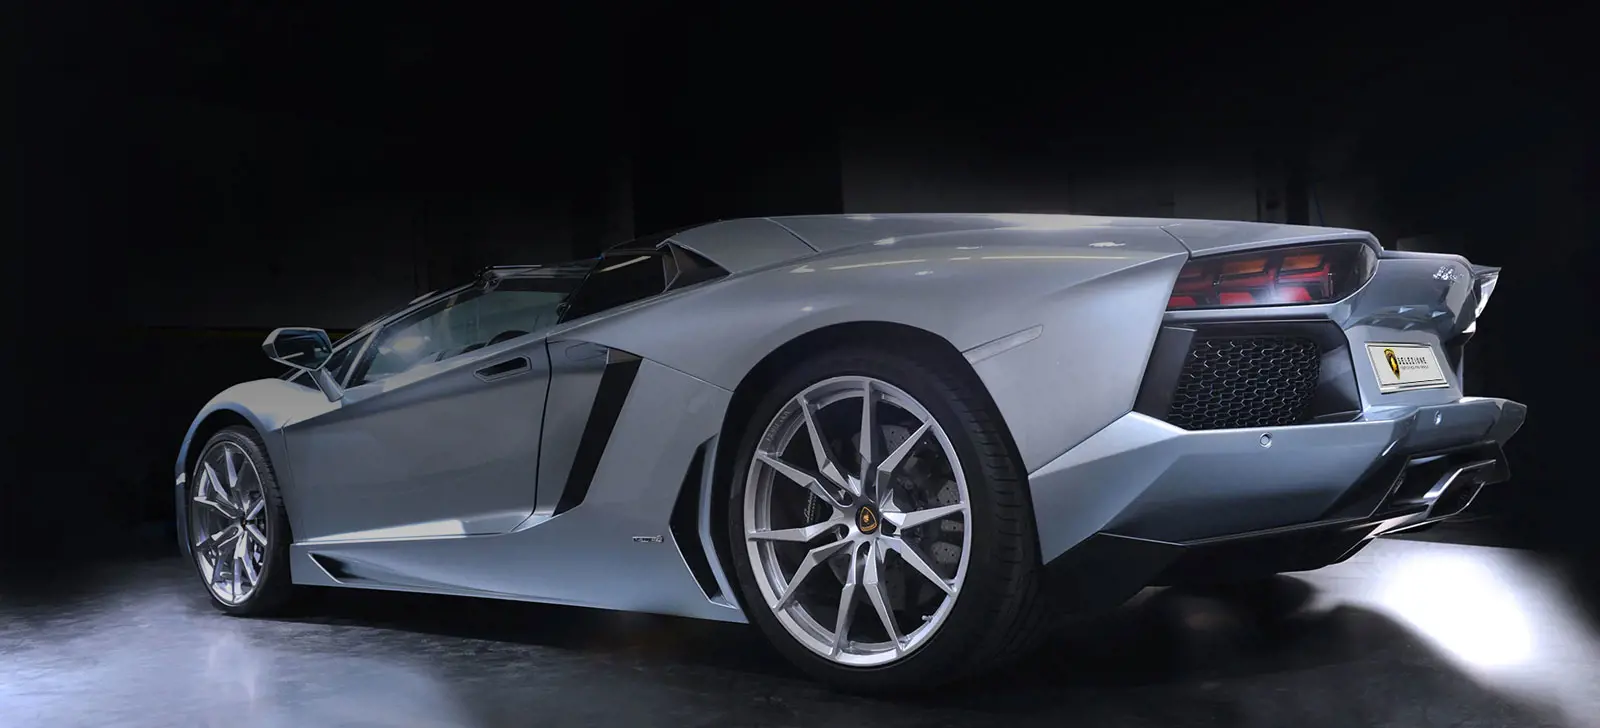 Lamborghini Selezione: Certified Pre-Owned Program